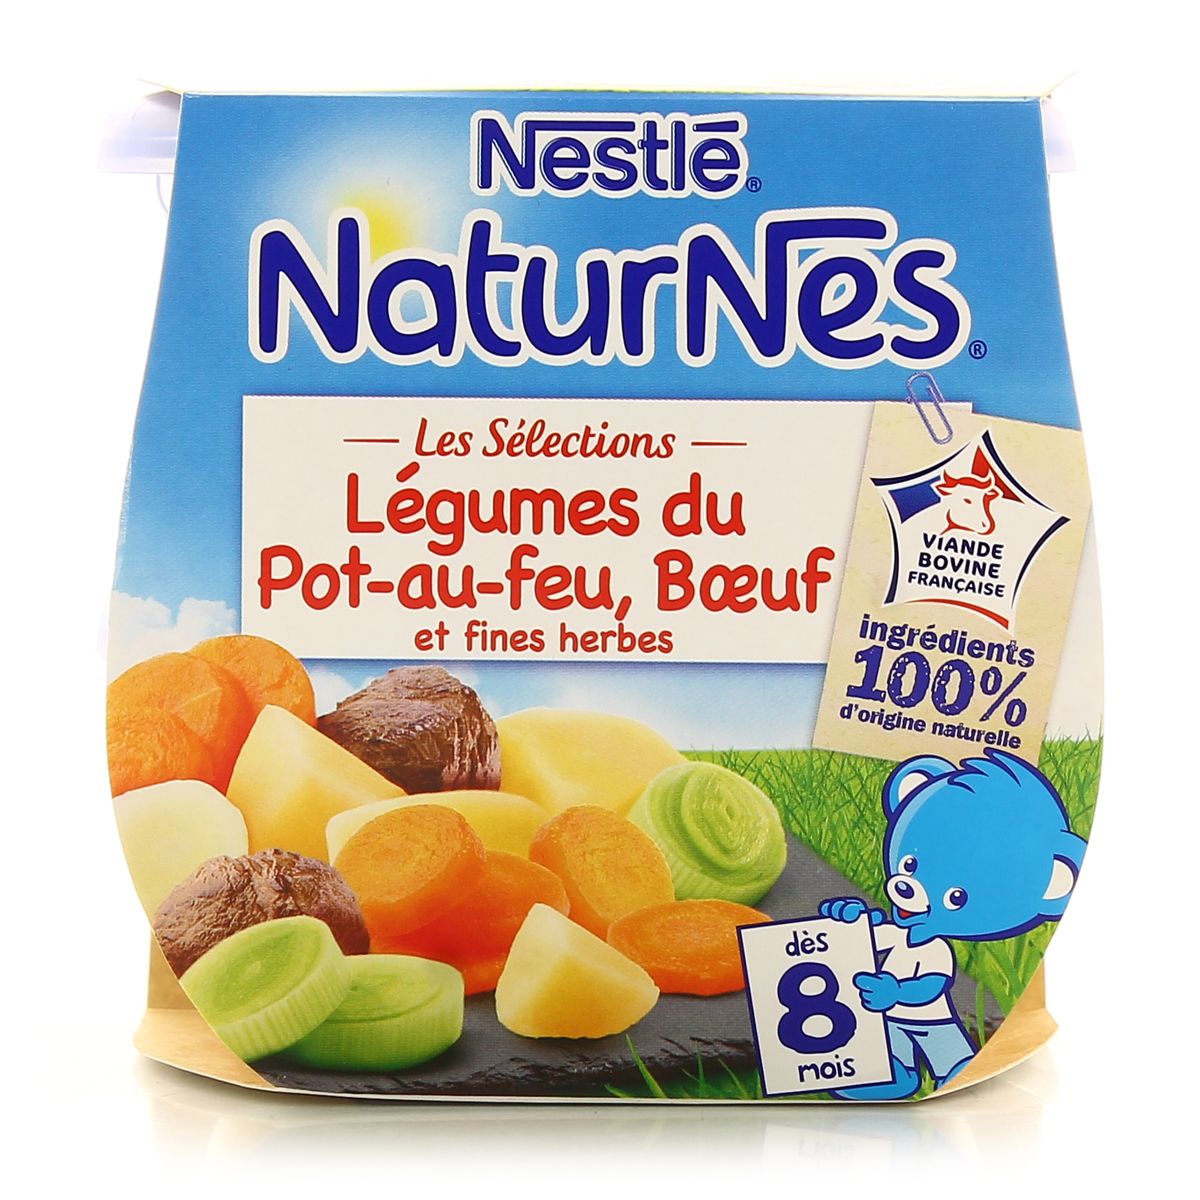 Achat Nestle Naturnes Legumes Du Pot Au Feu Boeuf Des 8 Mois 2x0g